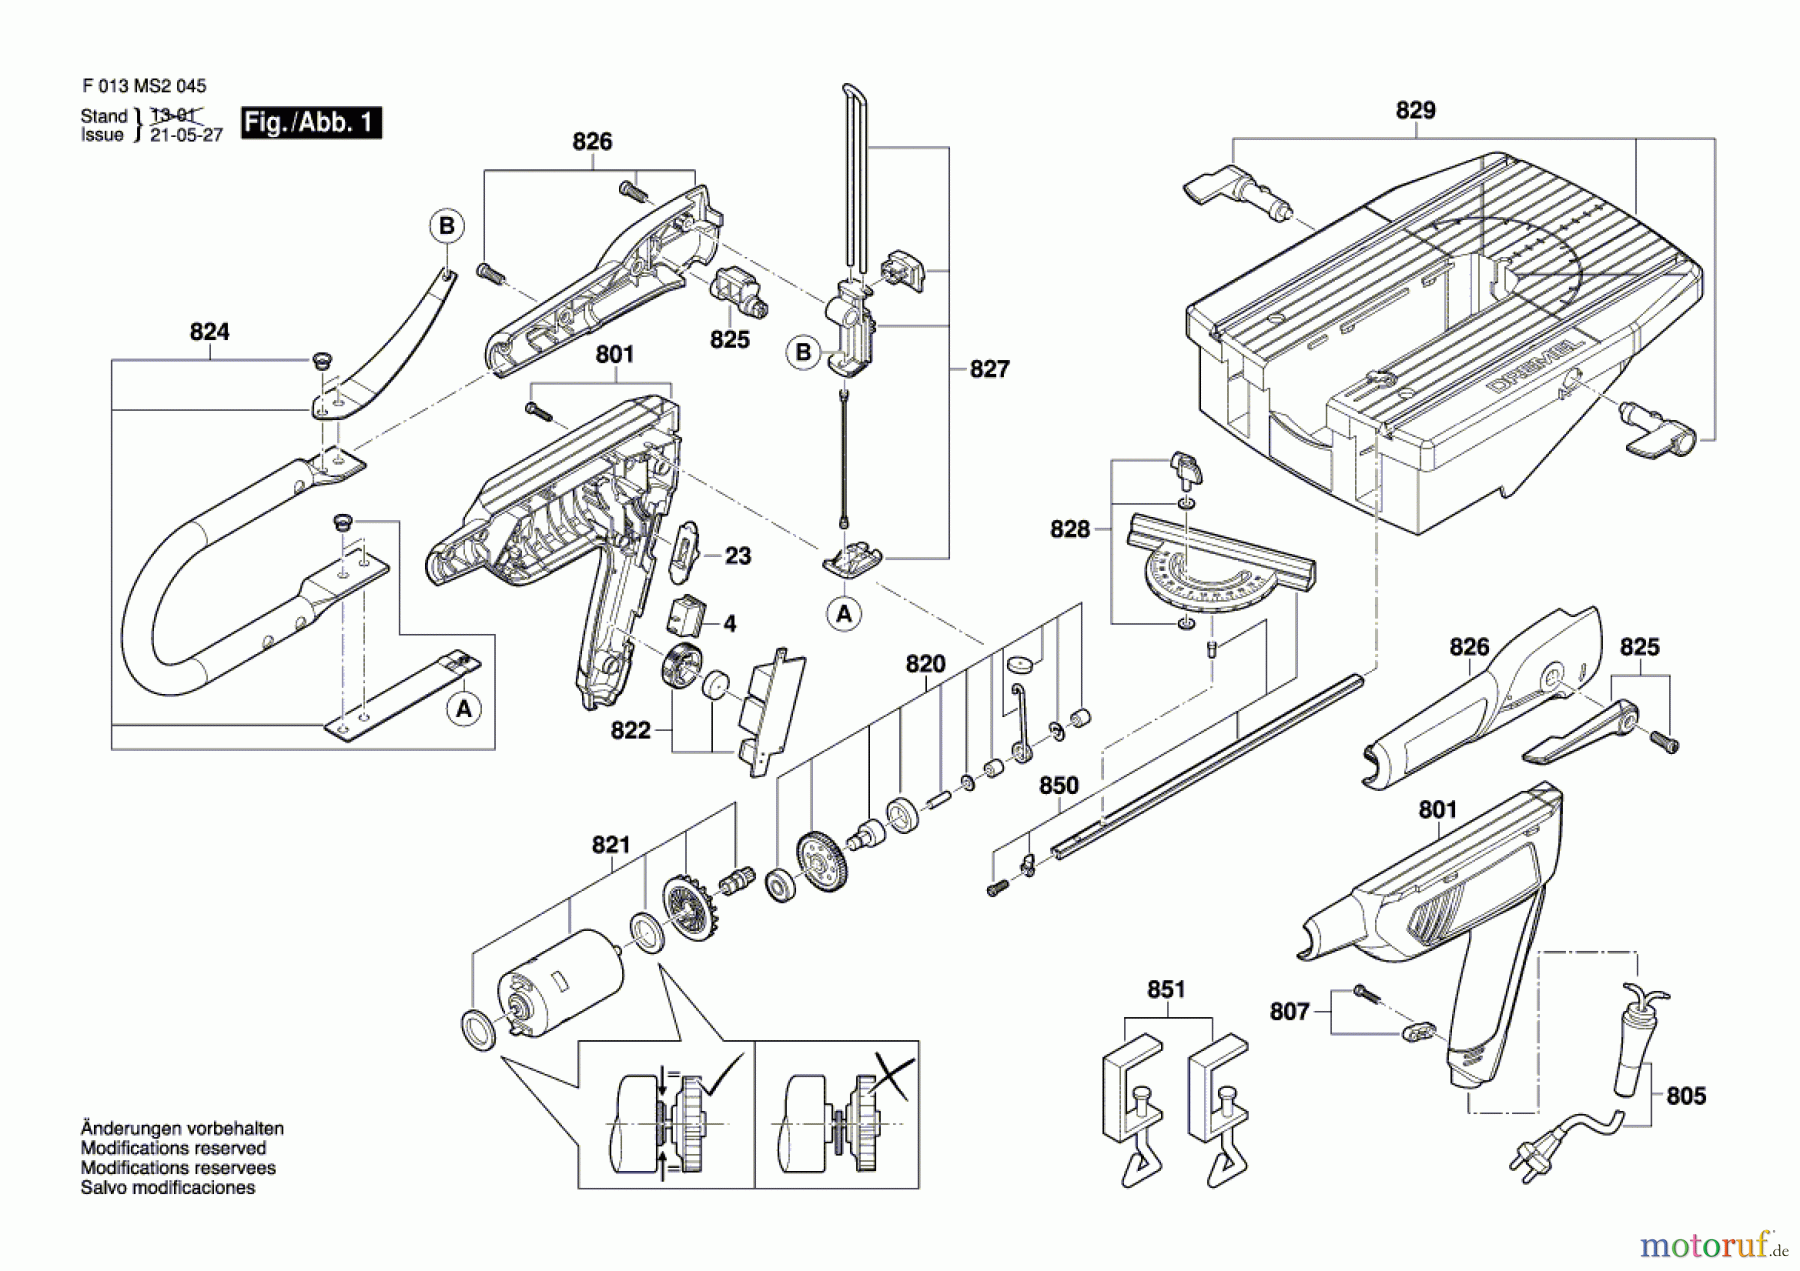  Bosch Werkzeug Bügelsäge MS 20 Seite 1